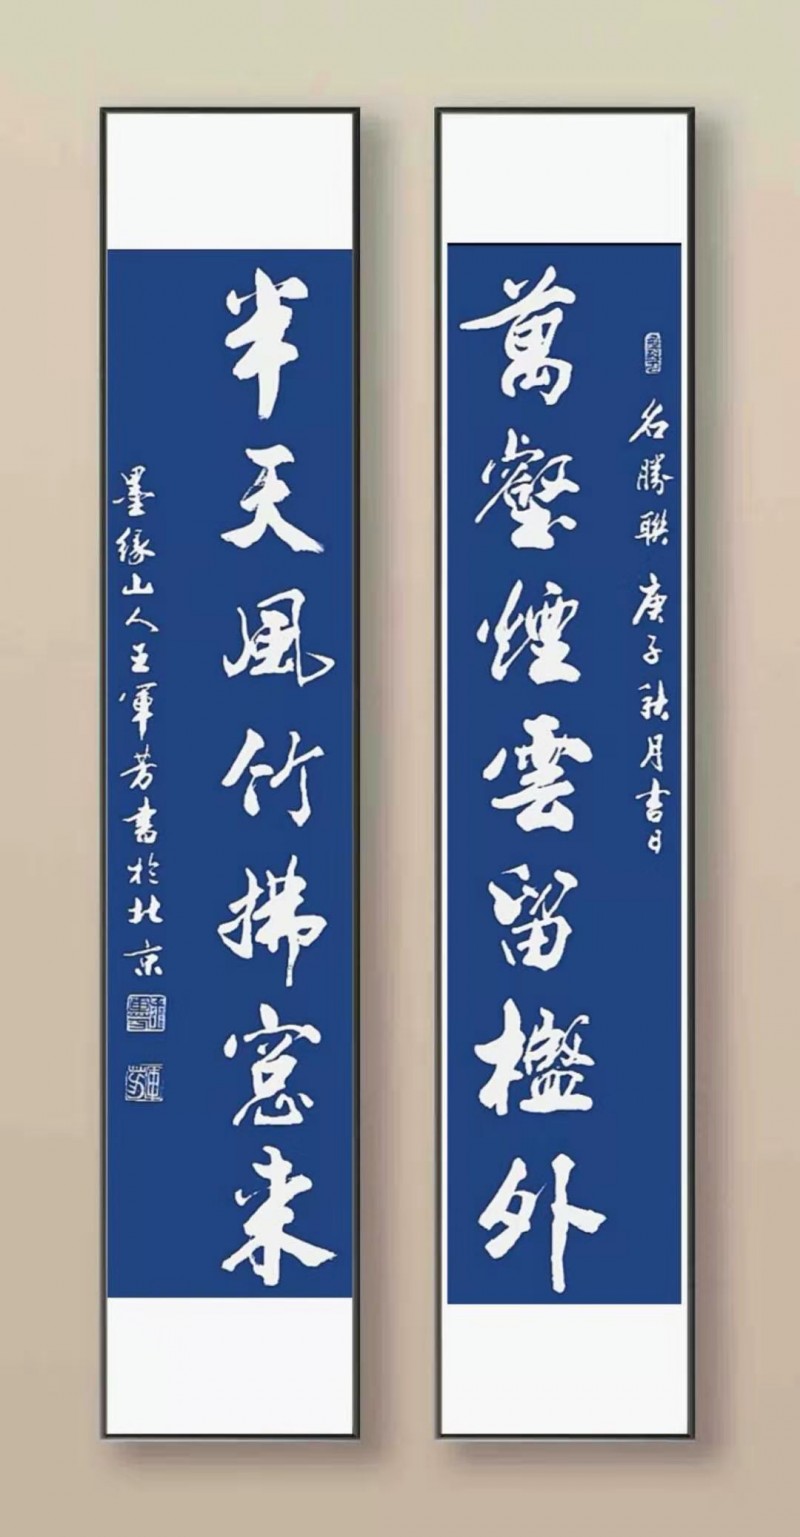 中国楹联学会中宣盛世文化艺术交流中心书画风采展示——王军芳